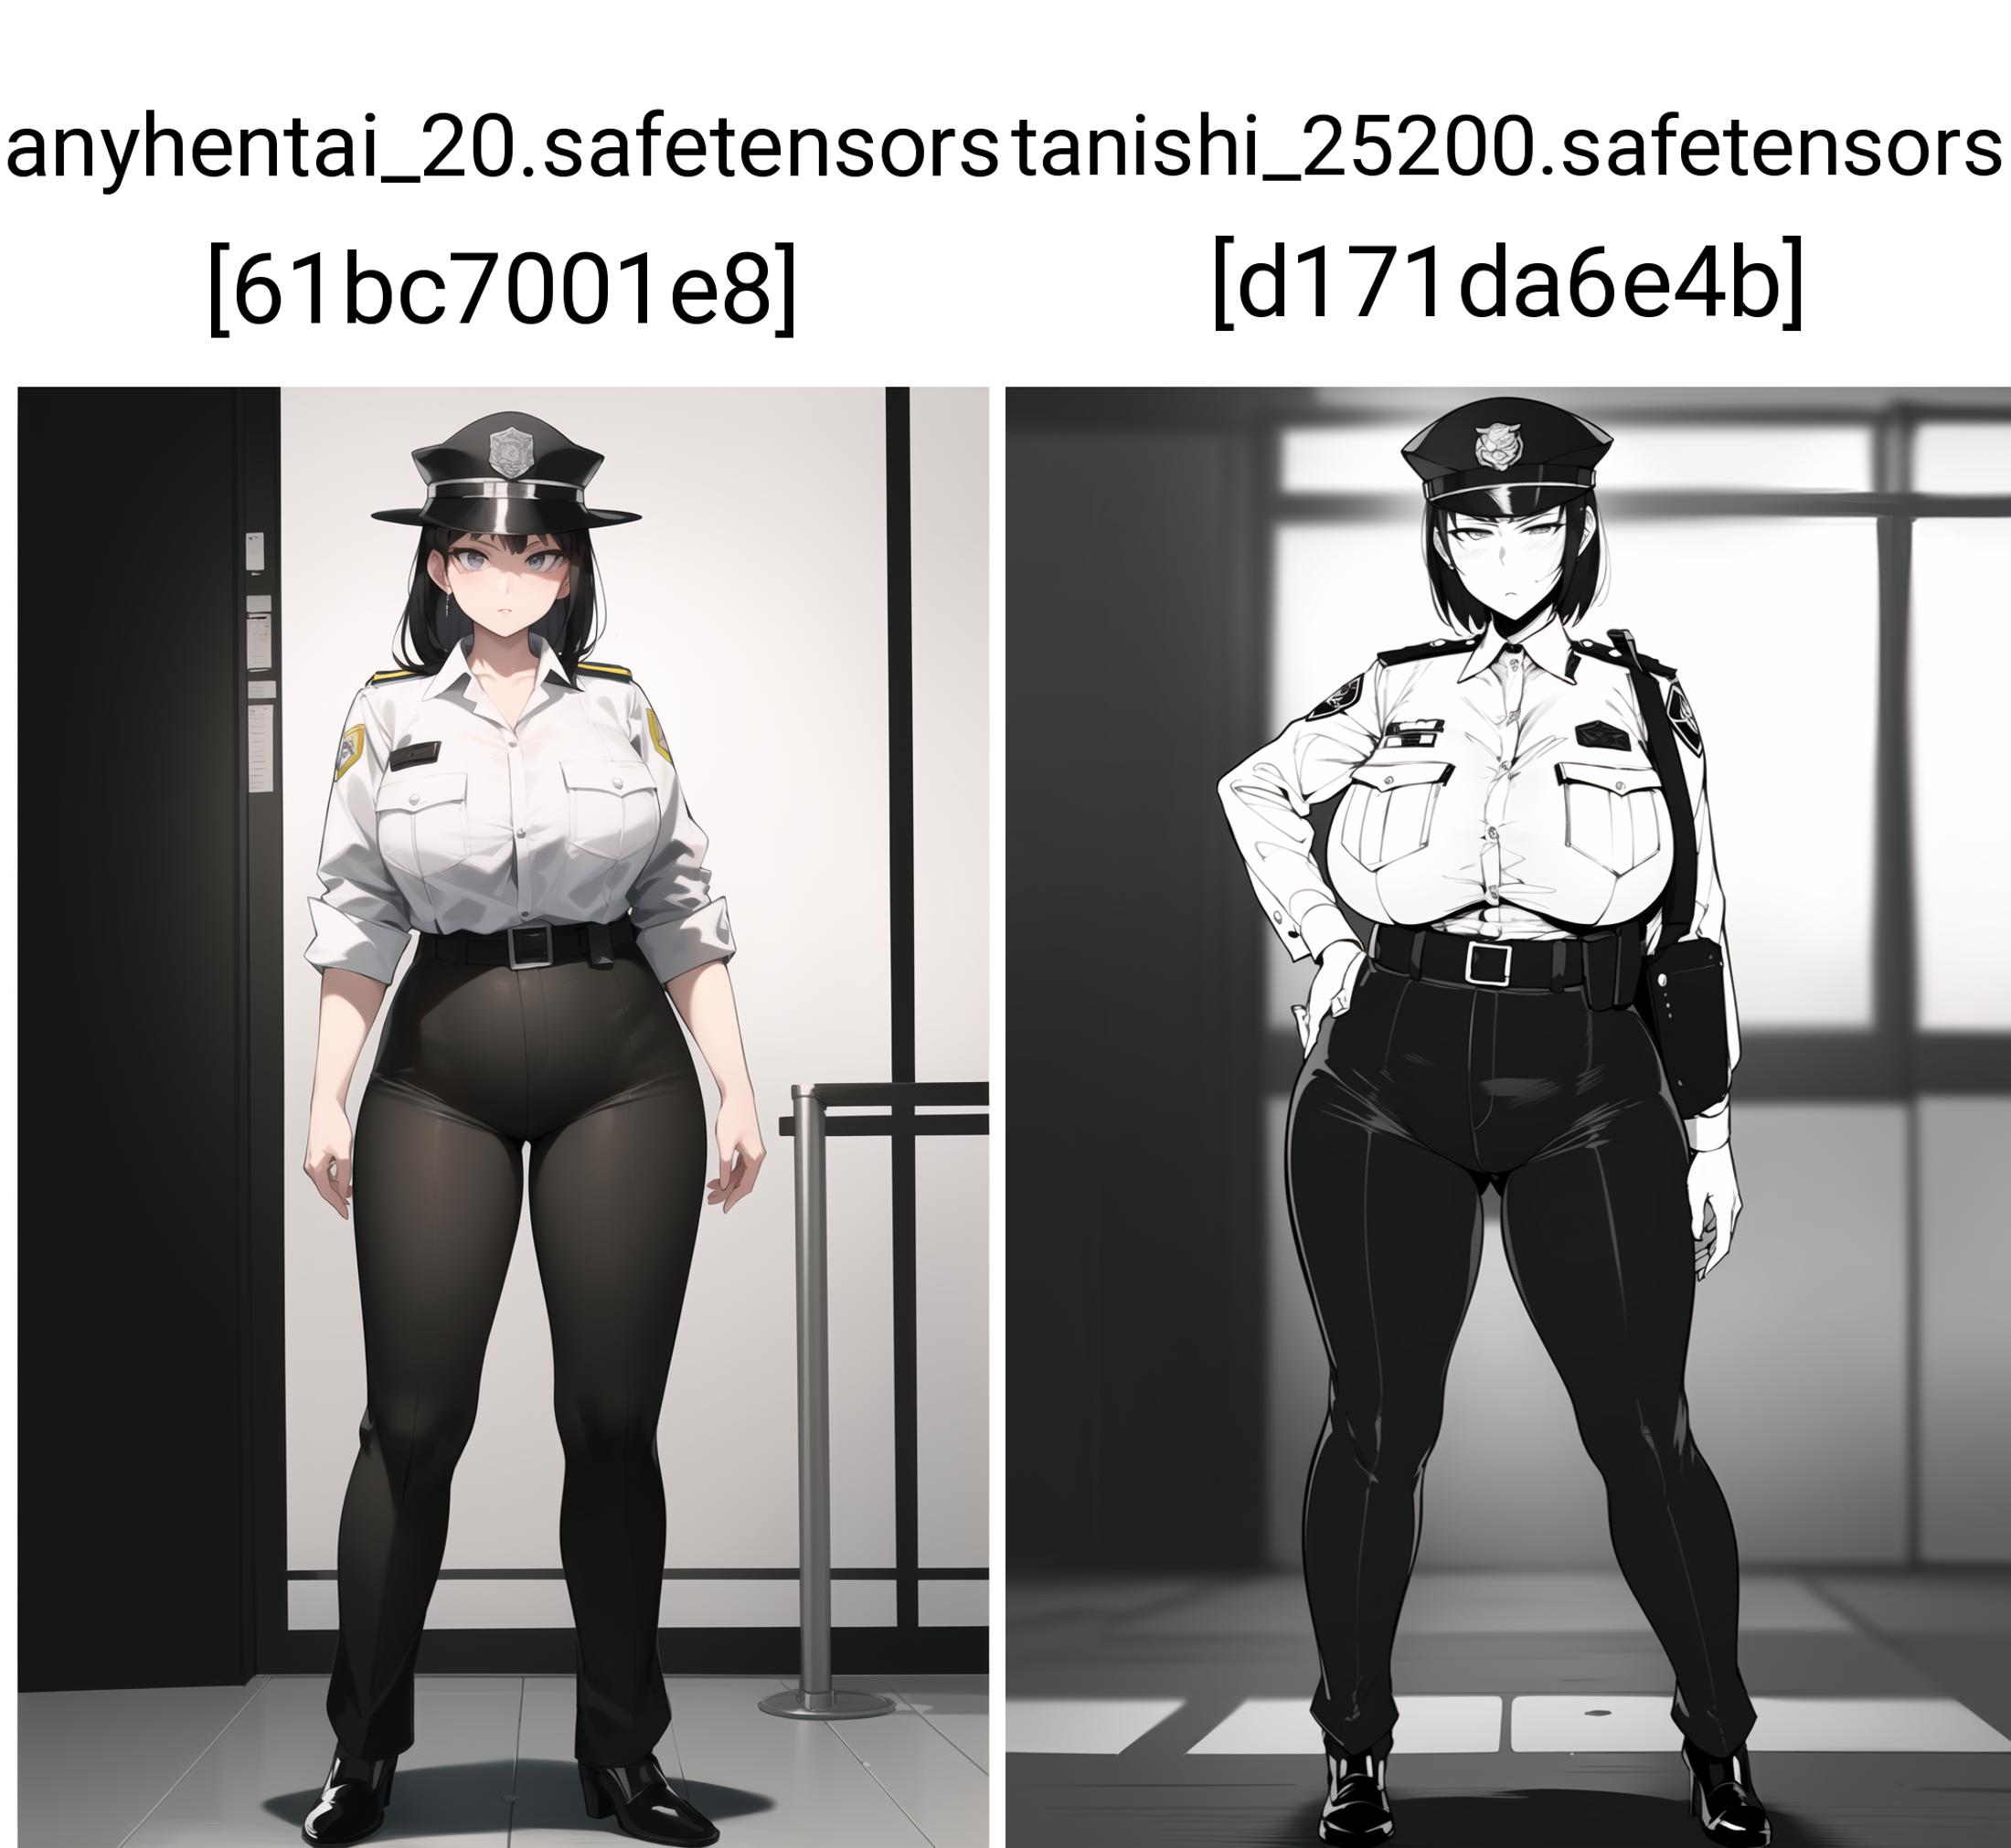 Tanishi (hentai model) image by FrentzyTime